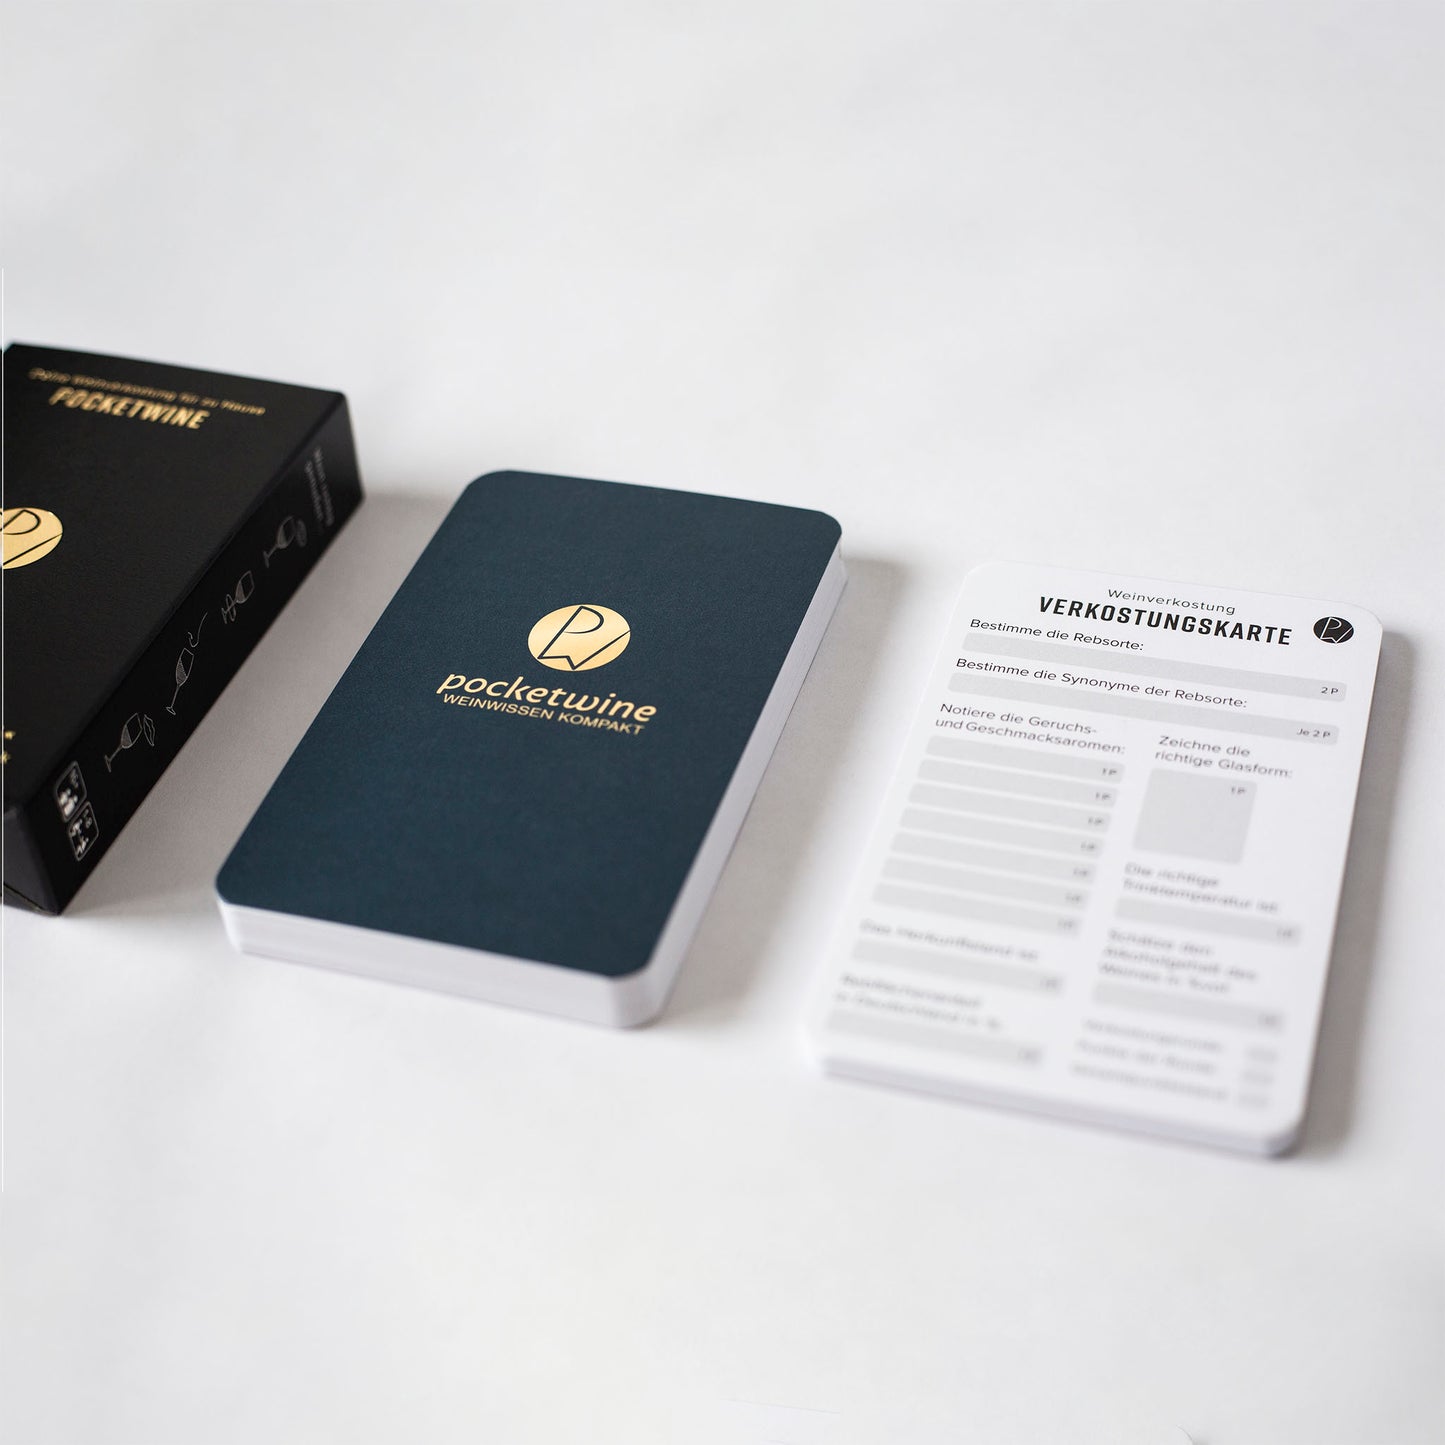 Pocketwine Kartenset - Verkostungsspiel inkl. kompaktes Weinwissen